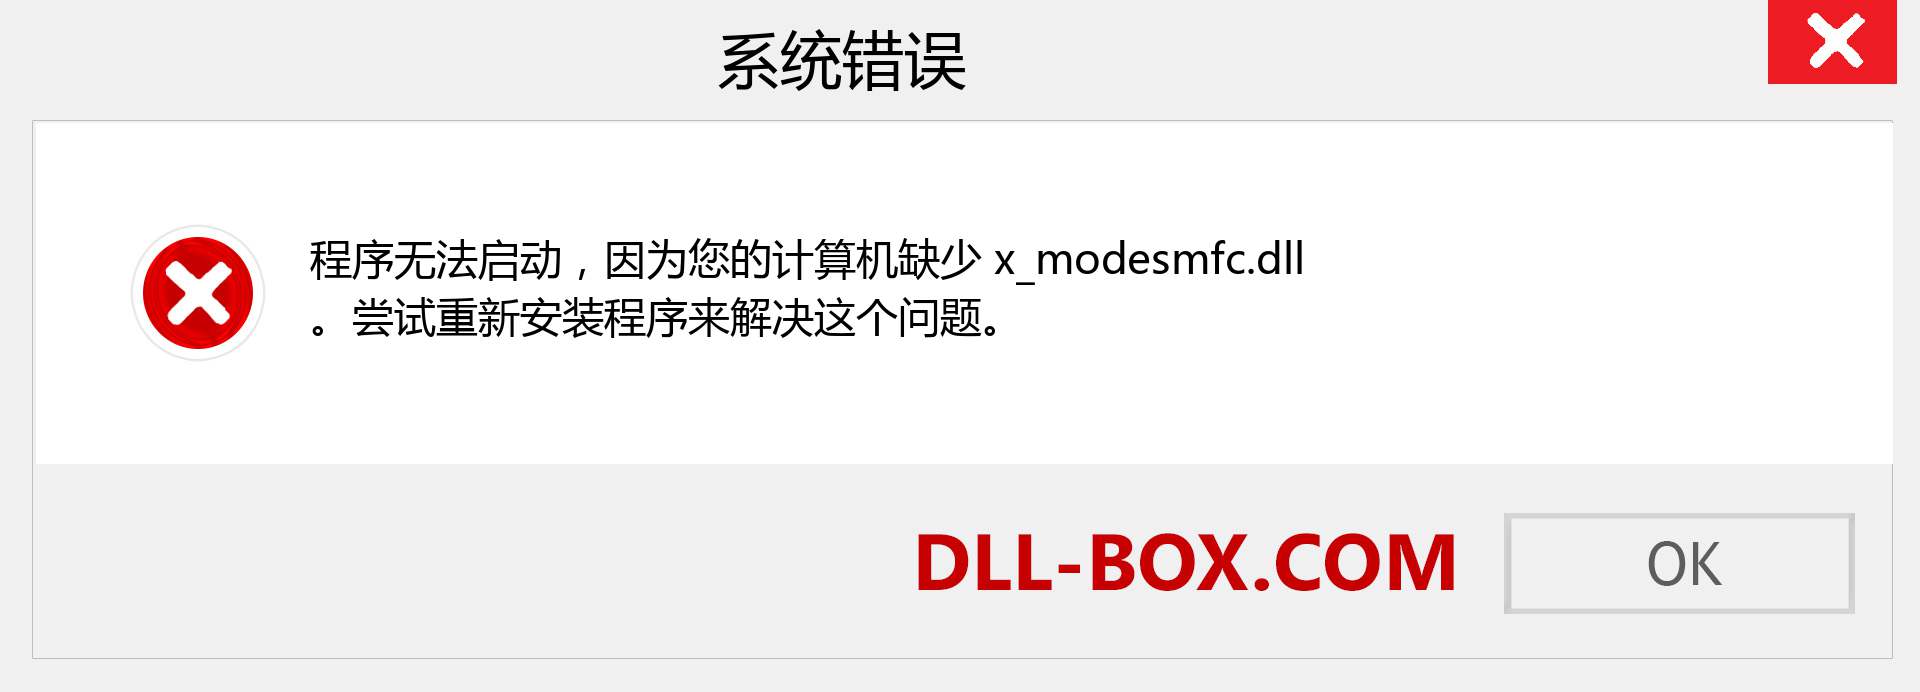 x_modesmfc.dll 文件丢失？。 适用于 Windows 7、8、10 的下载 - 修复 Windows、照片、图像上的 x_modesmfc dll 丢失错误